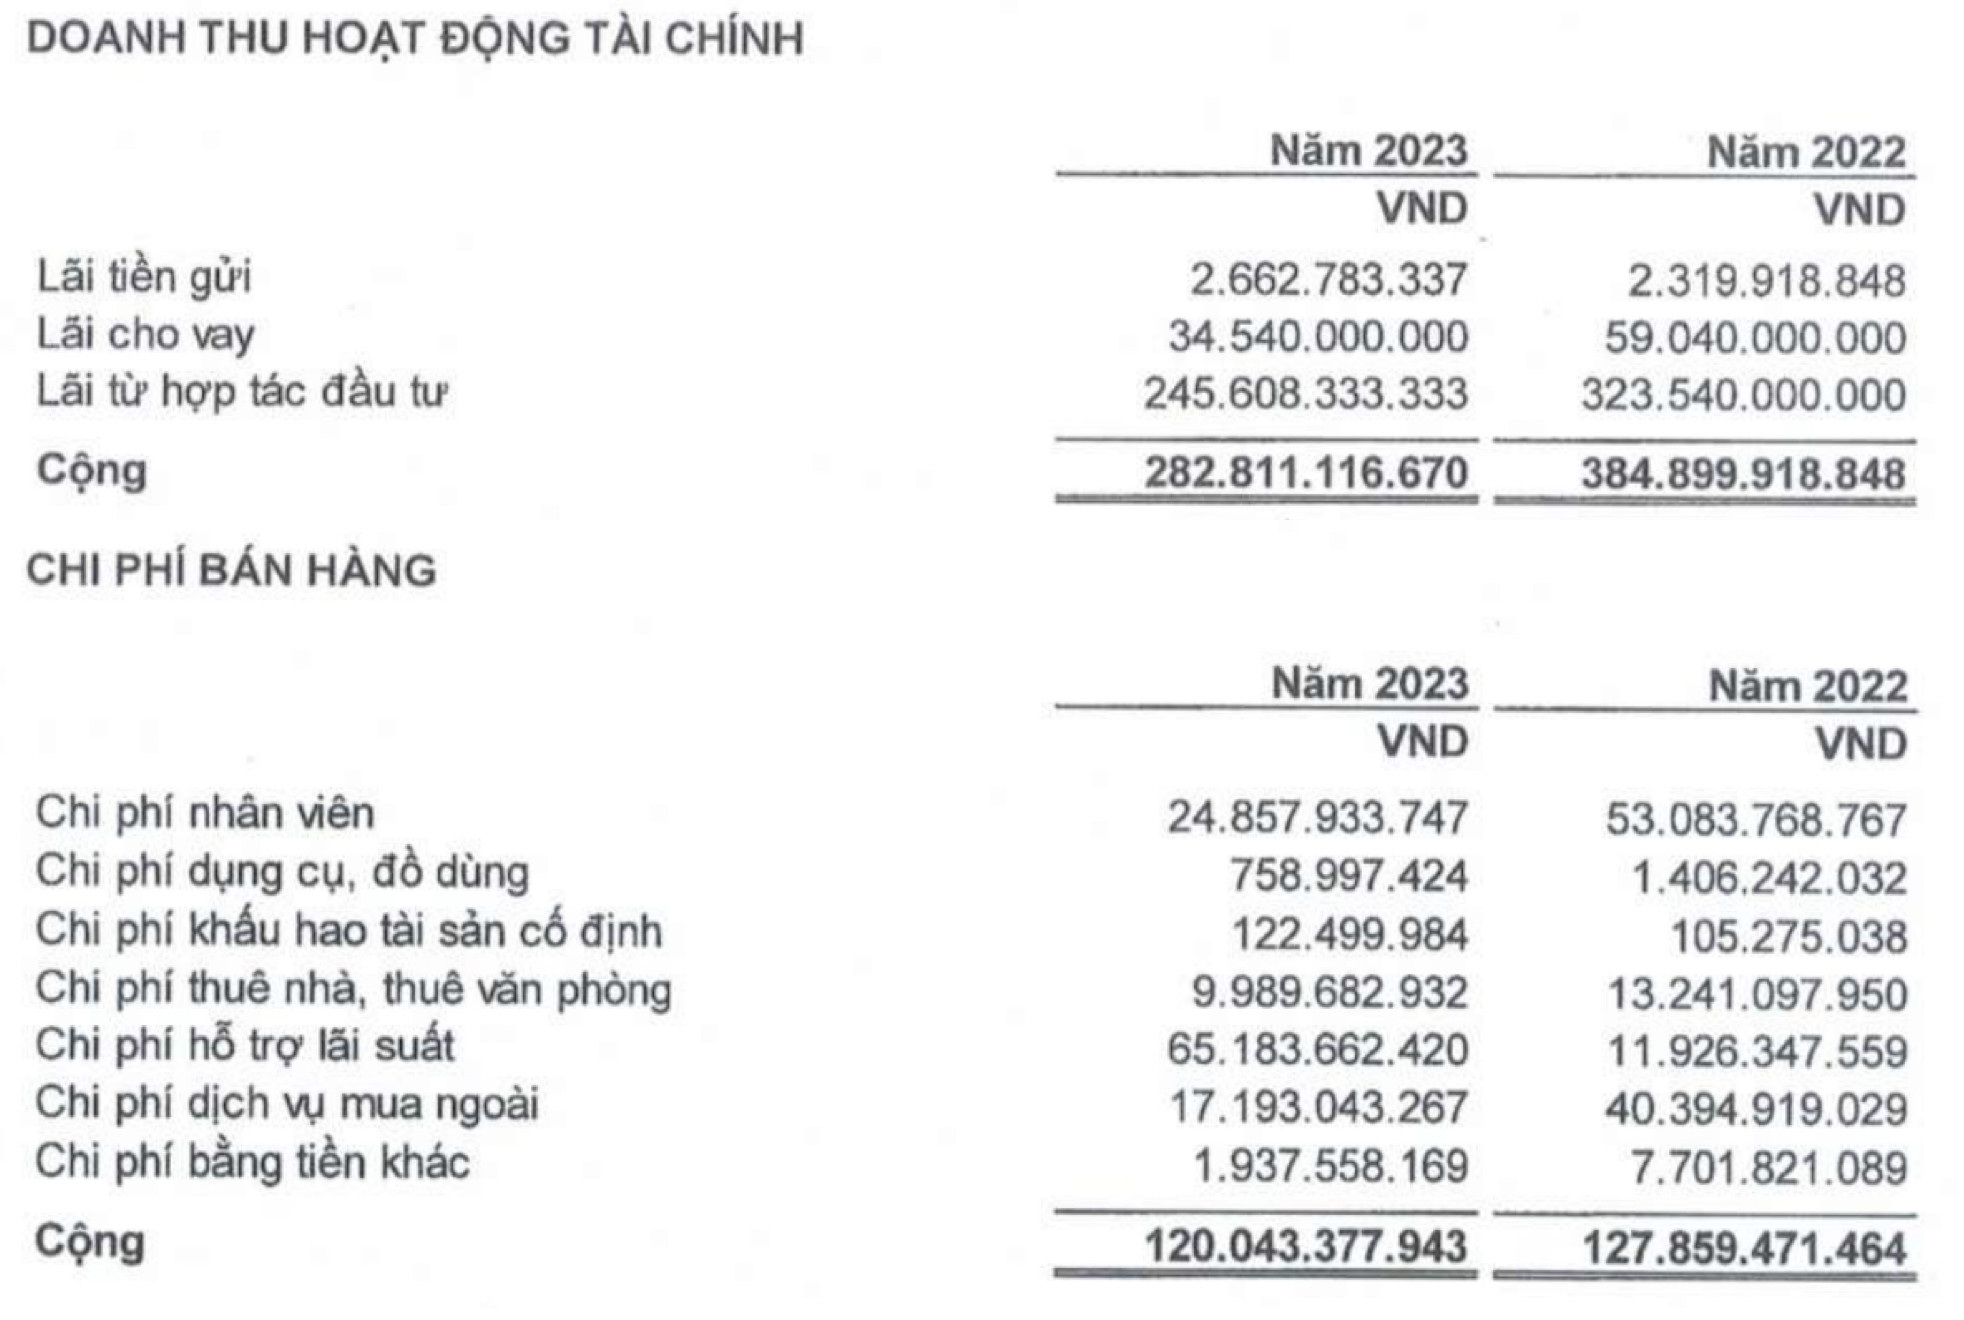 Cơ cấu doanh thu tài chính và chi phí bán hàng sau kiểm toán năm 2023 (Nguồn: KHG)